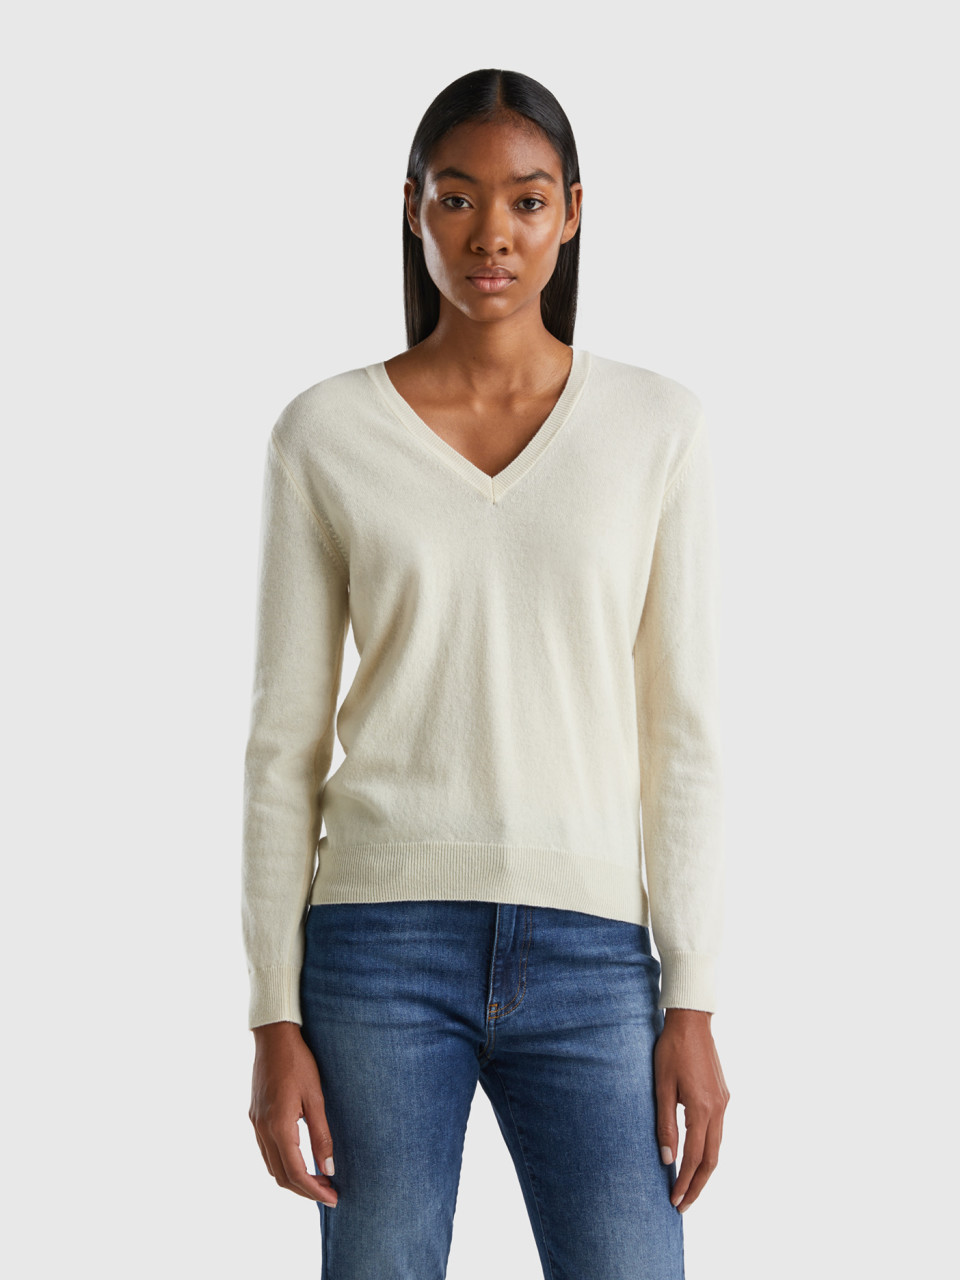 Benetton, Cream V-neck Sweater In Pure Merino Wool, Creamy White, Women